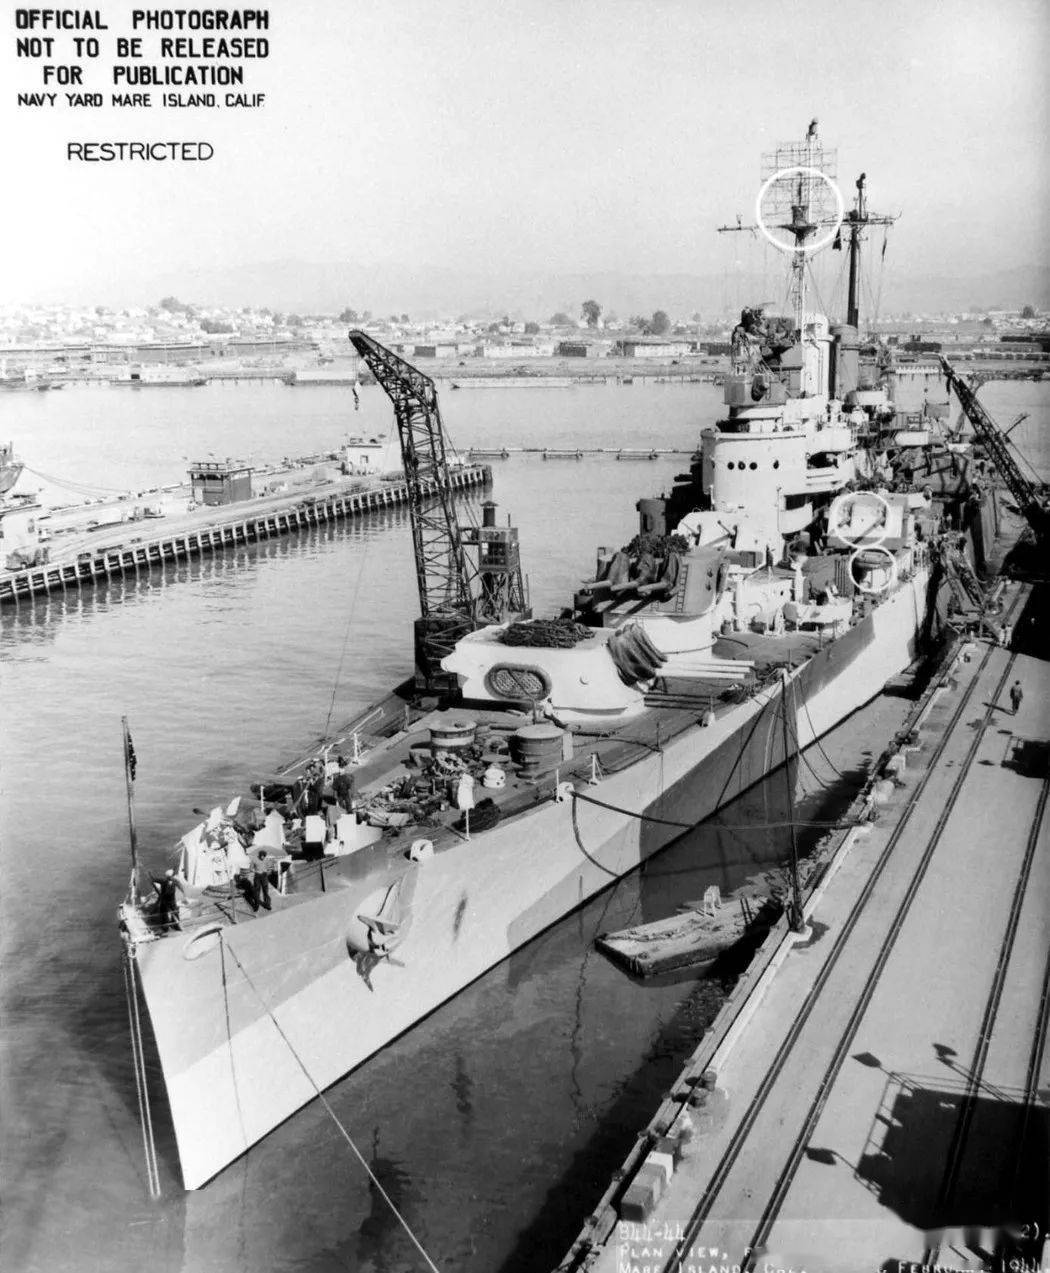 美国二战轻巡洋舰列表图片